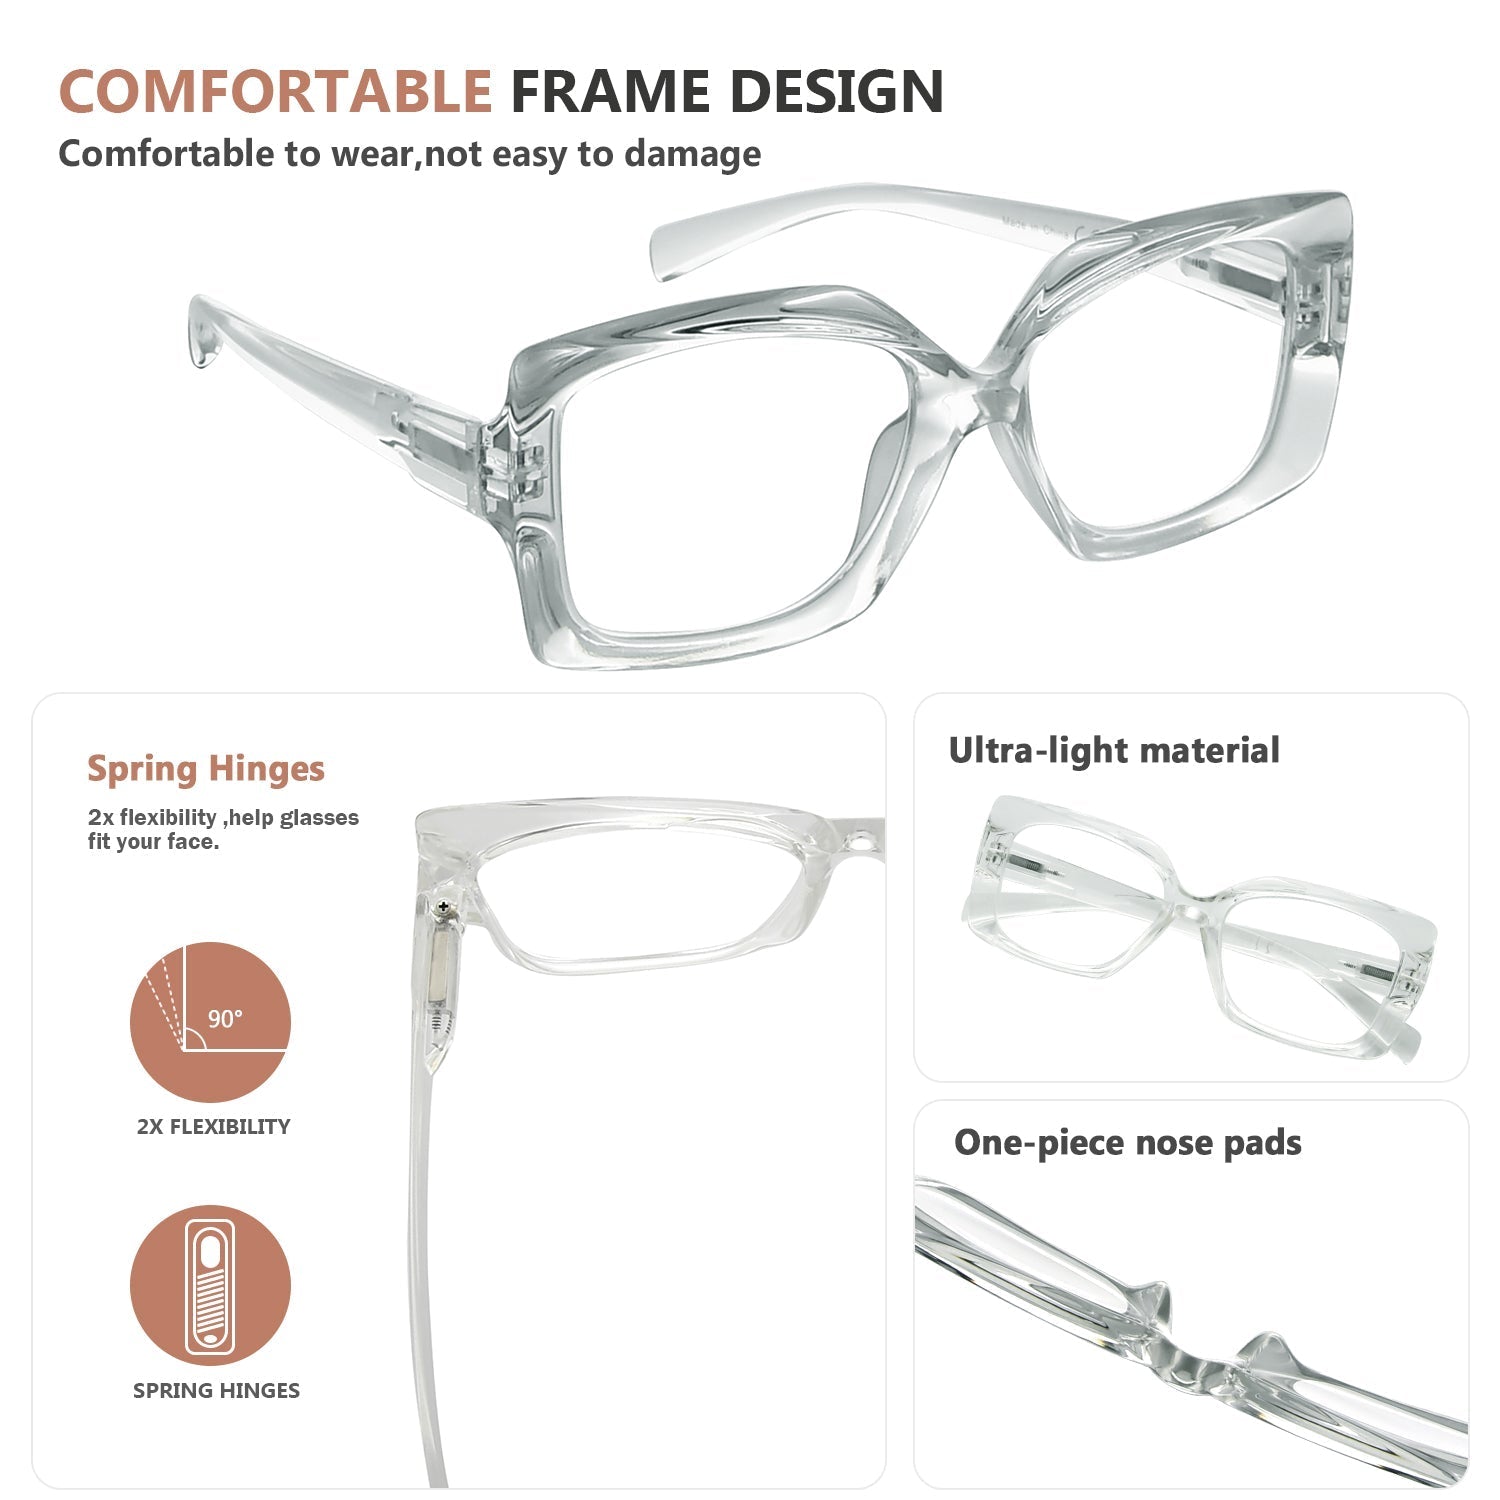 Large Frame Reading Glasses Oversized Eyeglasses Women R2010